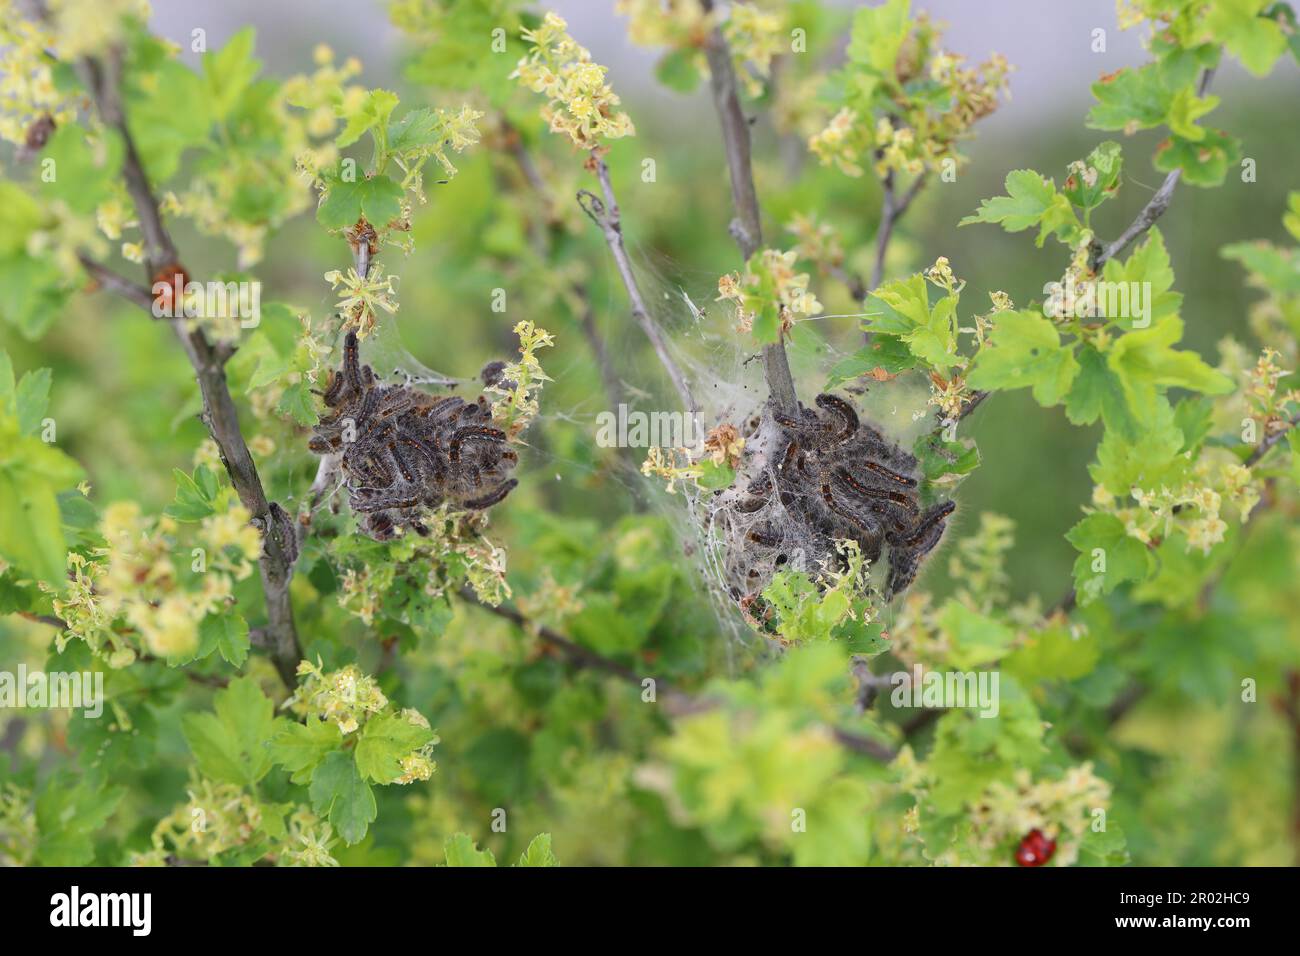 Braunschwanzraupen (Euproctis chrysorrhoea) aus dem Winternest. Wichtige Schädlinge vieler Bäume und Sträucher, einschließlich Obstbäumen. Stockfoto